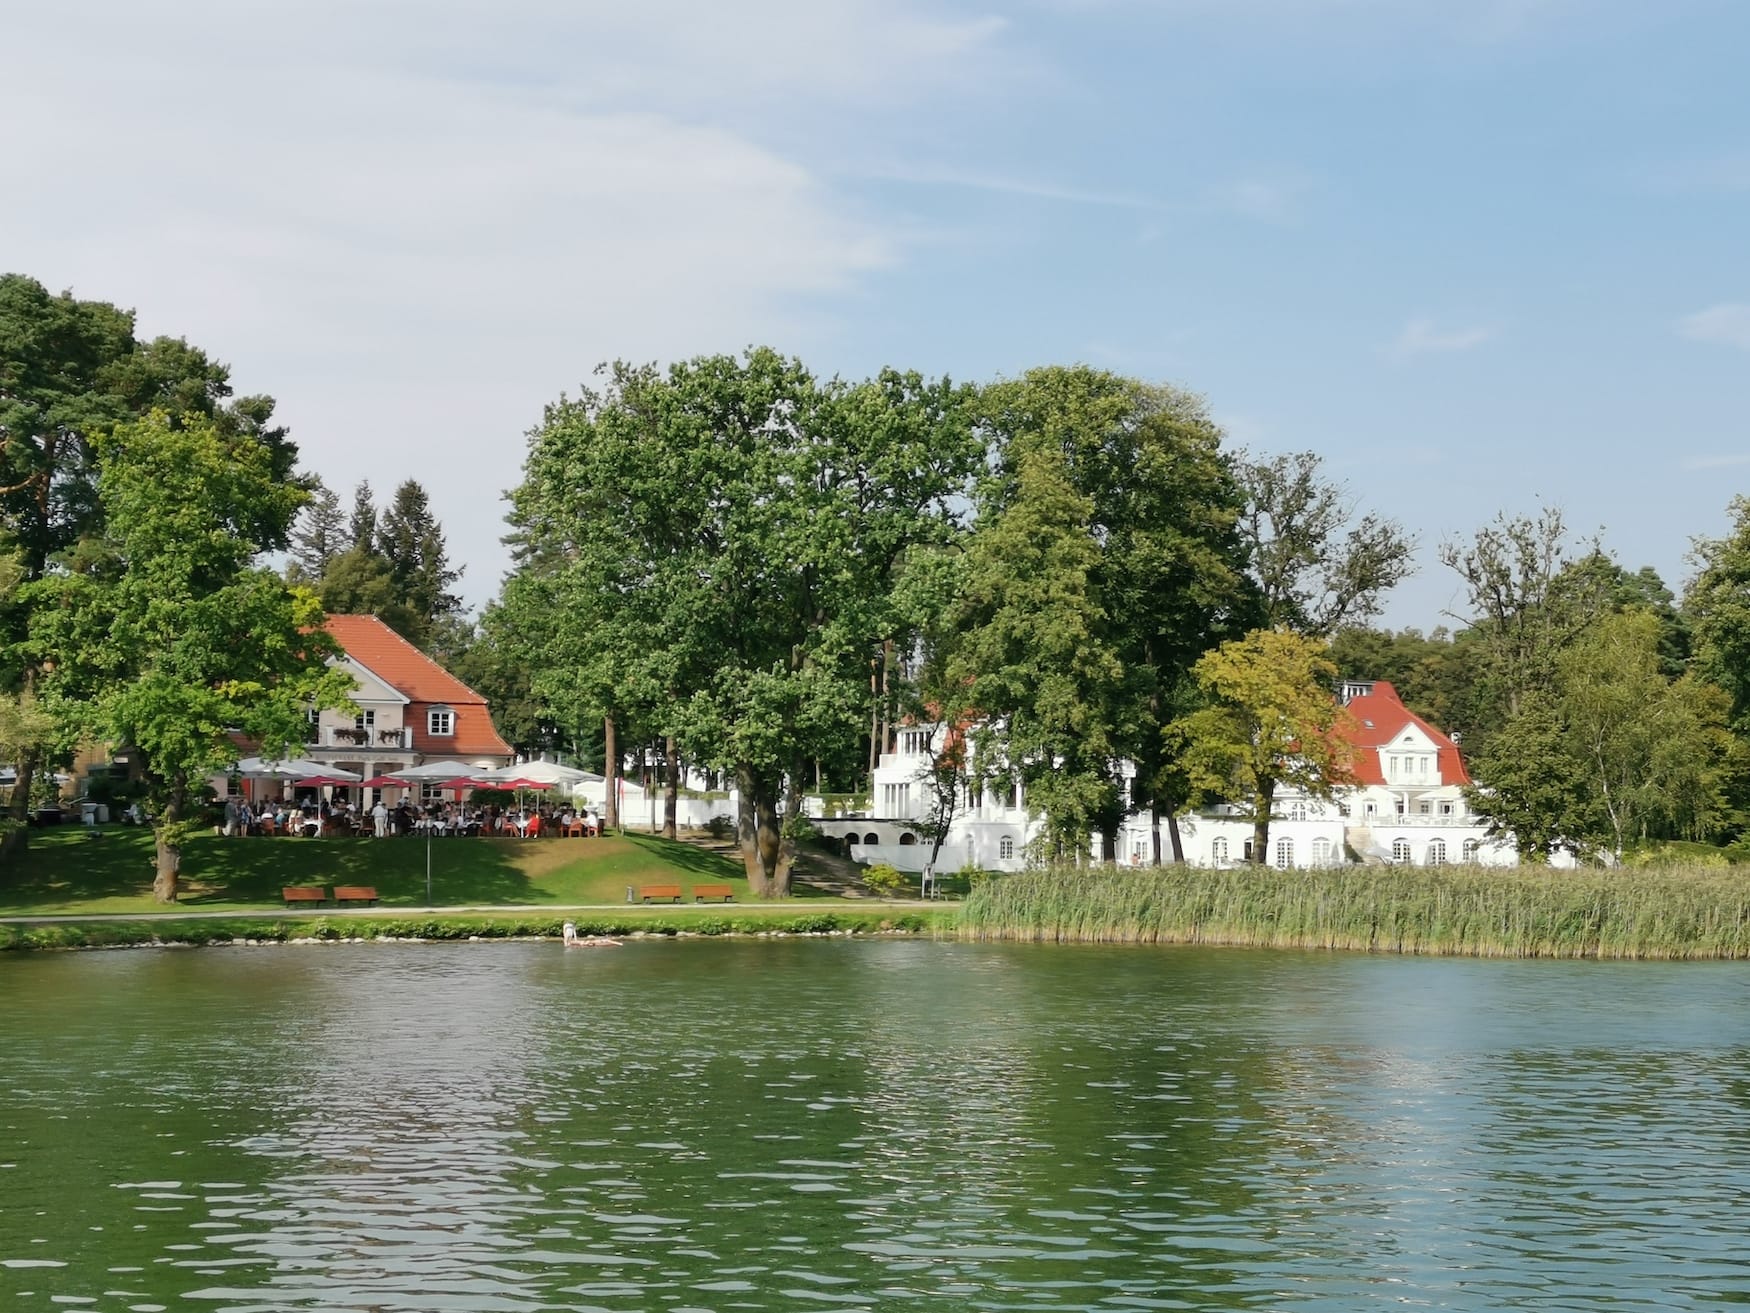 Blick auf Häuser am See in Bad Saarow, Brandenburg